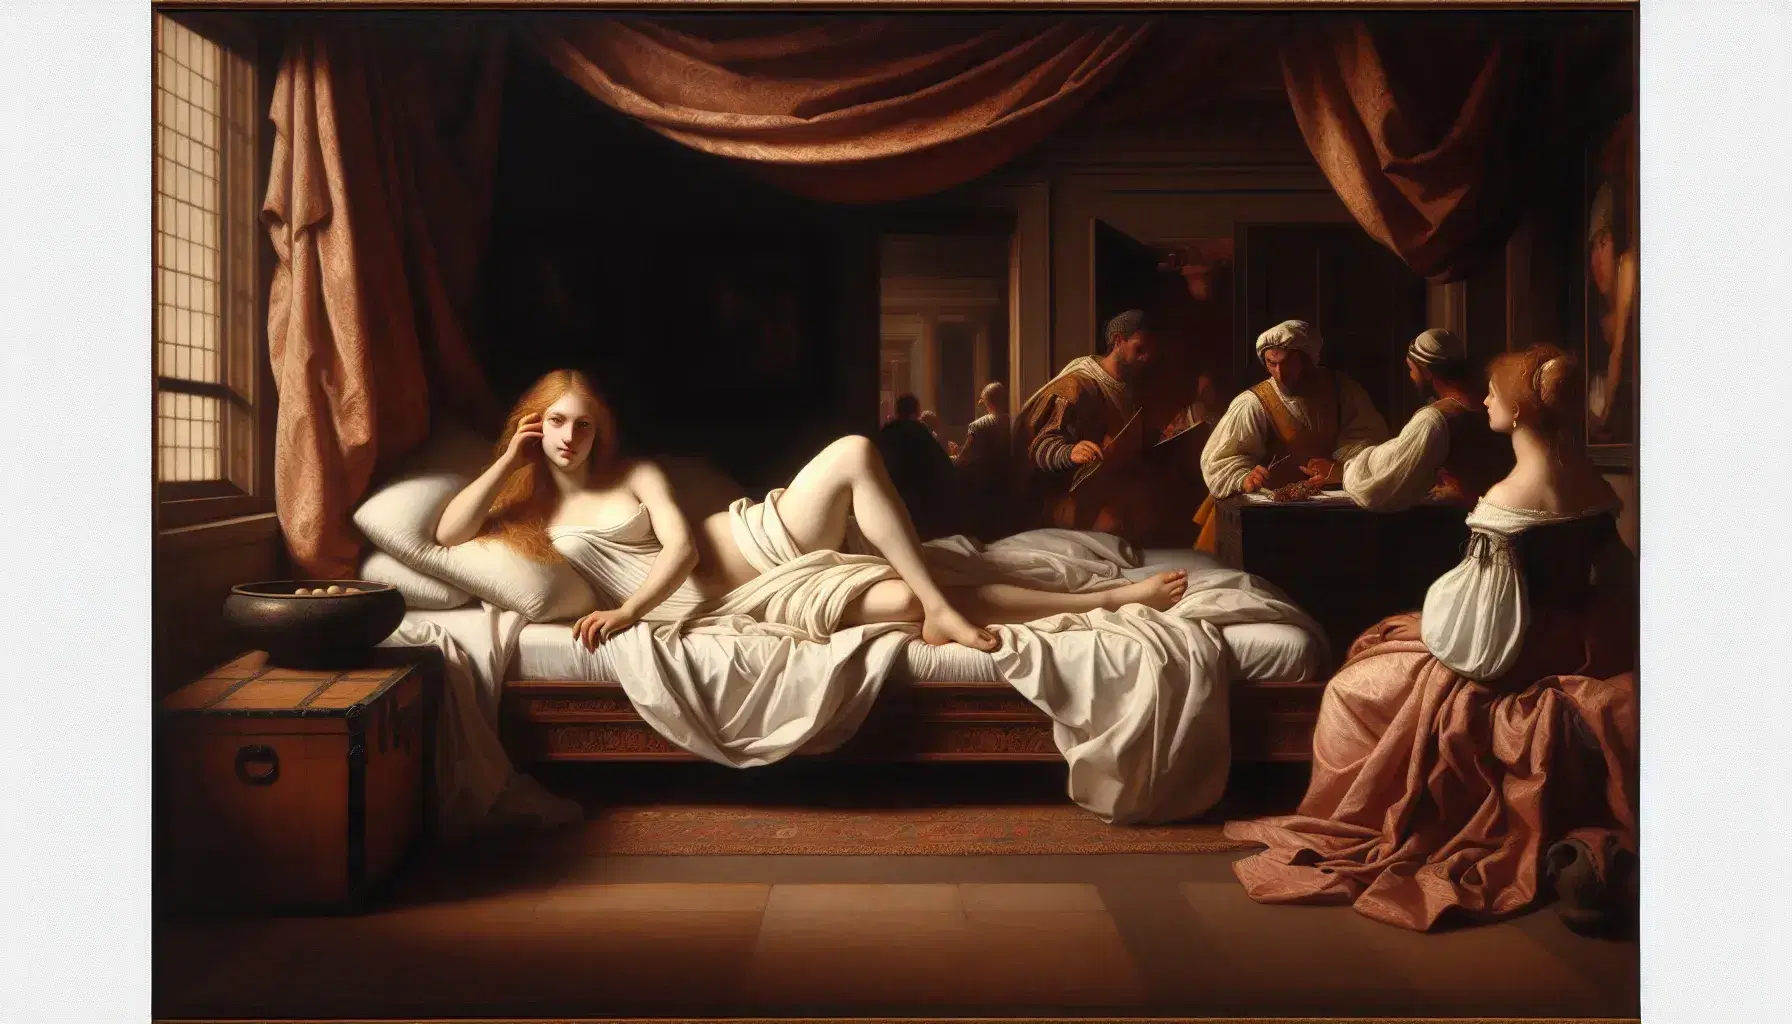 Riproduzione del dipinto 'Venere di Urbino' di Tiziano con donna bionda sdraiata su letto, due figure sullo sfondo in stanza illuminata.